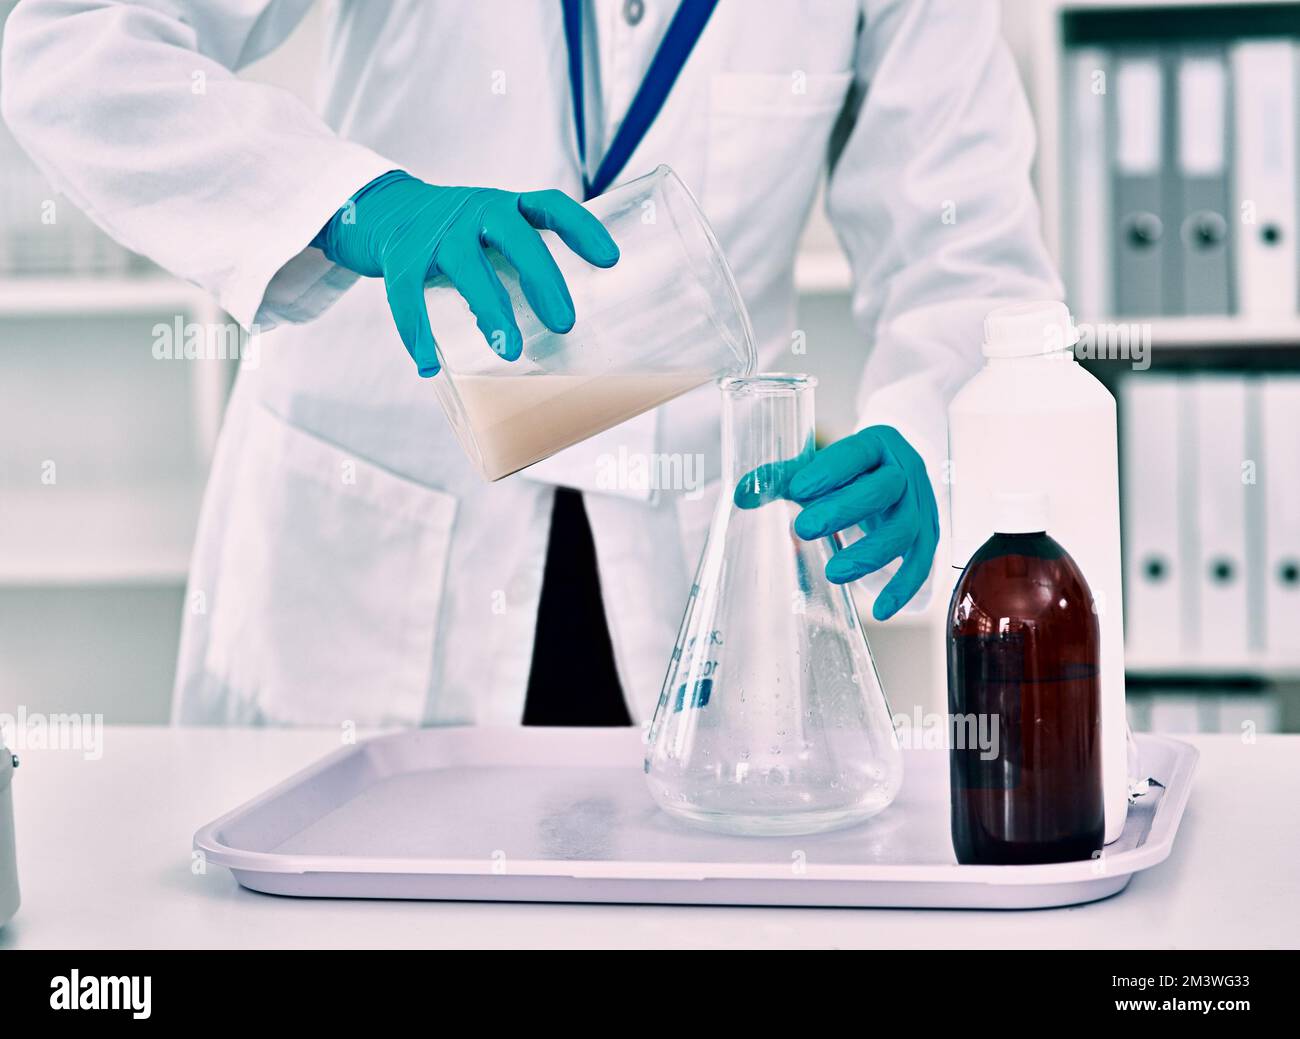 Mise en place de son expérience... une scientifique féminine méconnaissable transférant un liquide d'un bécher à une fiole conique tout en travaillant dans un laboratoire. Banque D'Images